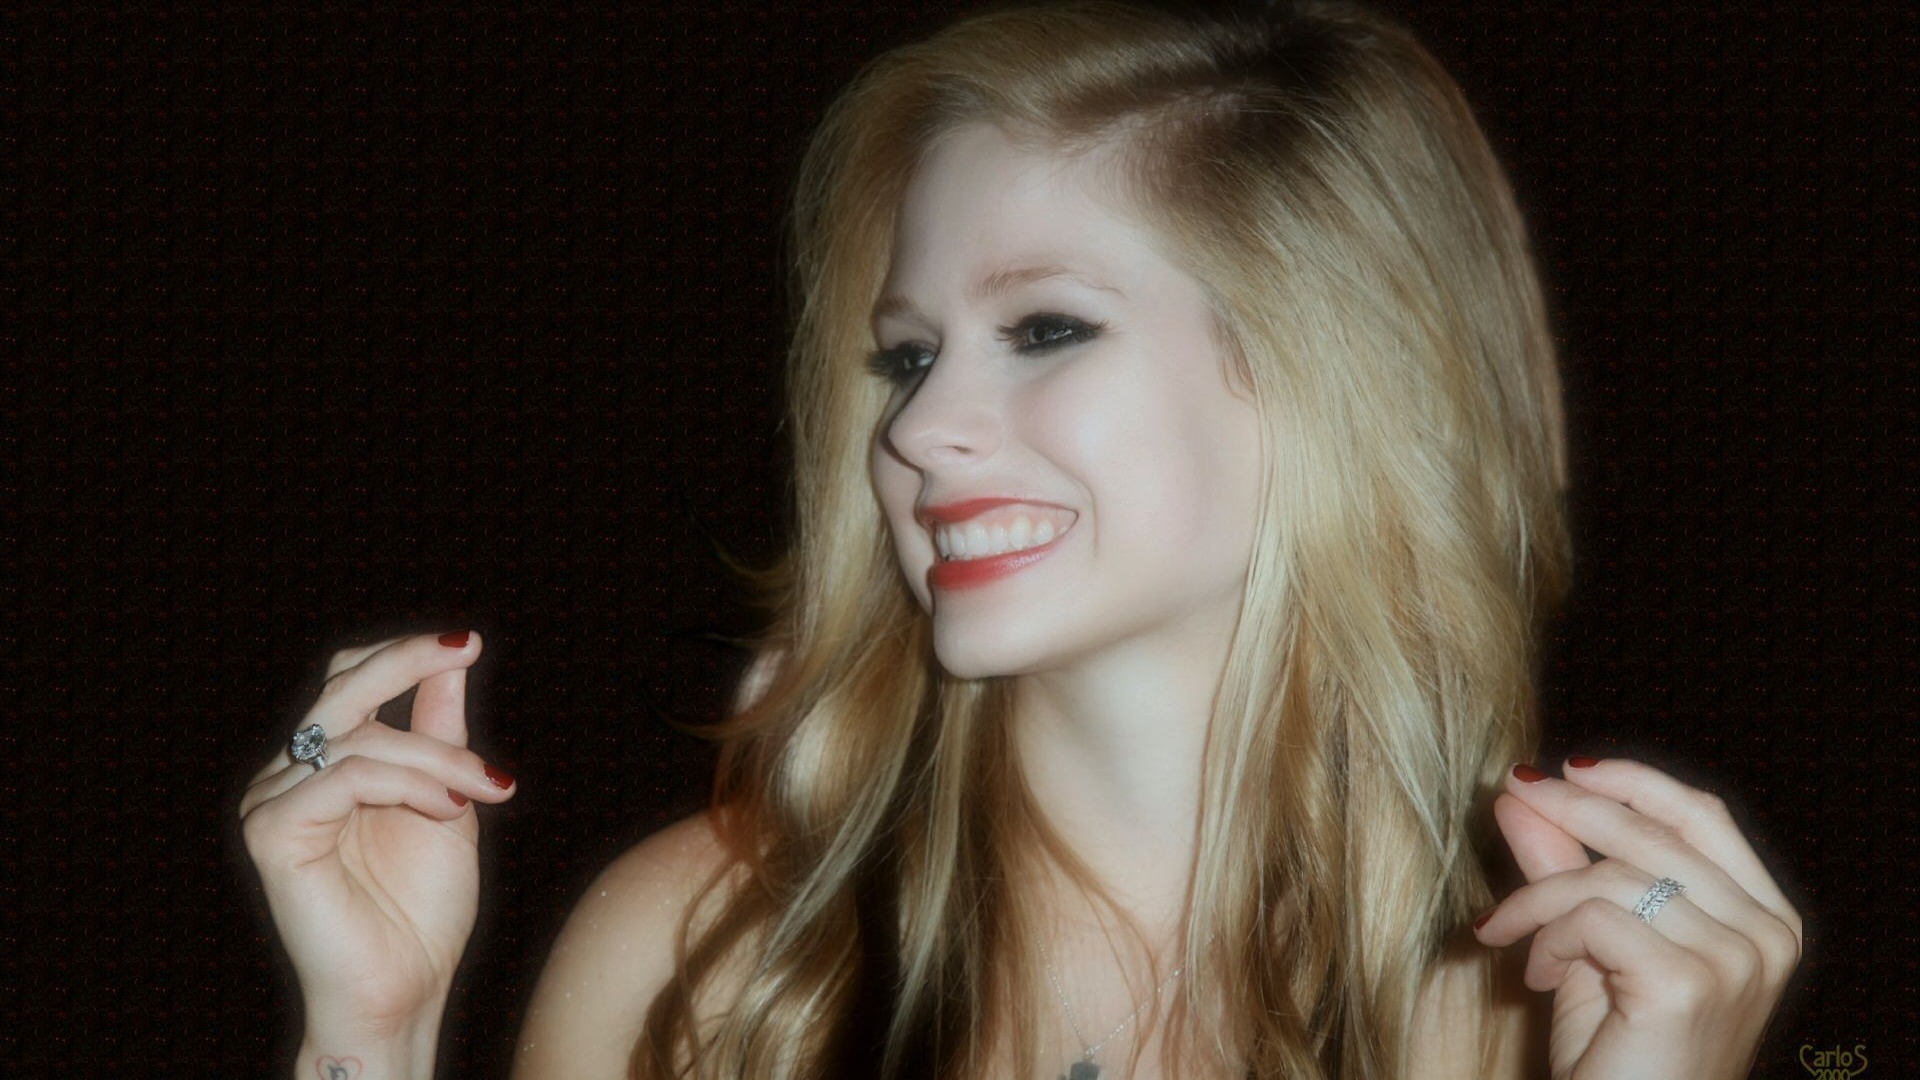 Avril Lavigne 艾薇儿·拉维妮 美女壁纸(二)12 - 1920x1080